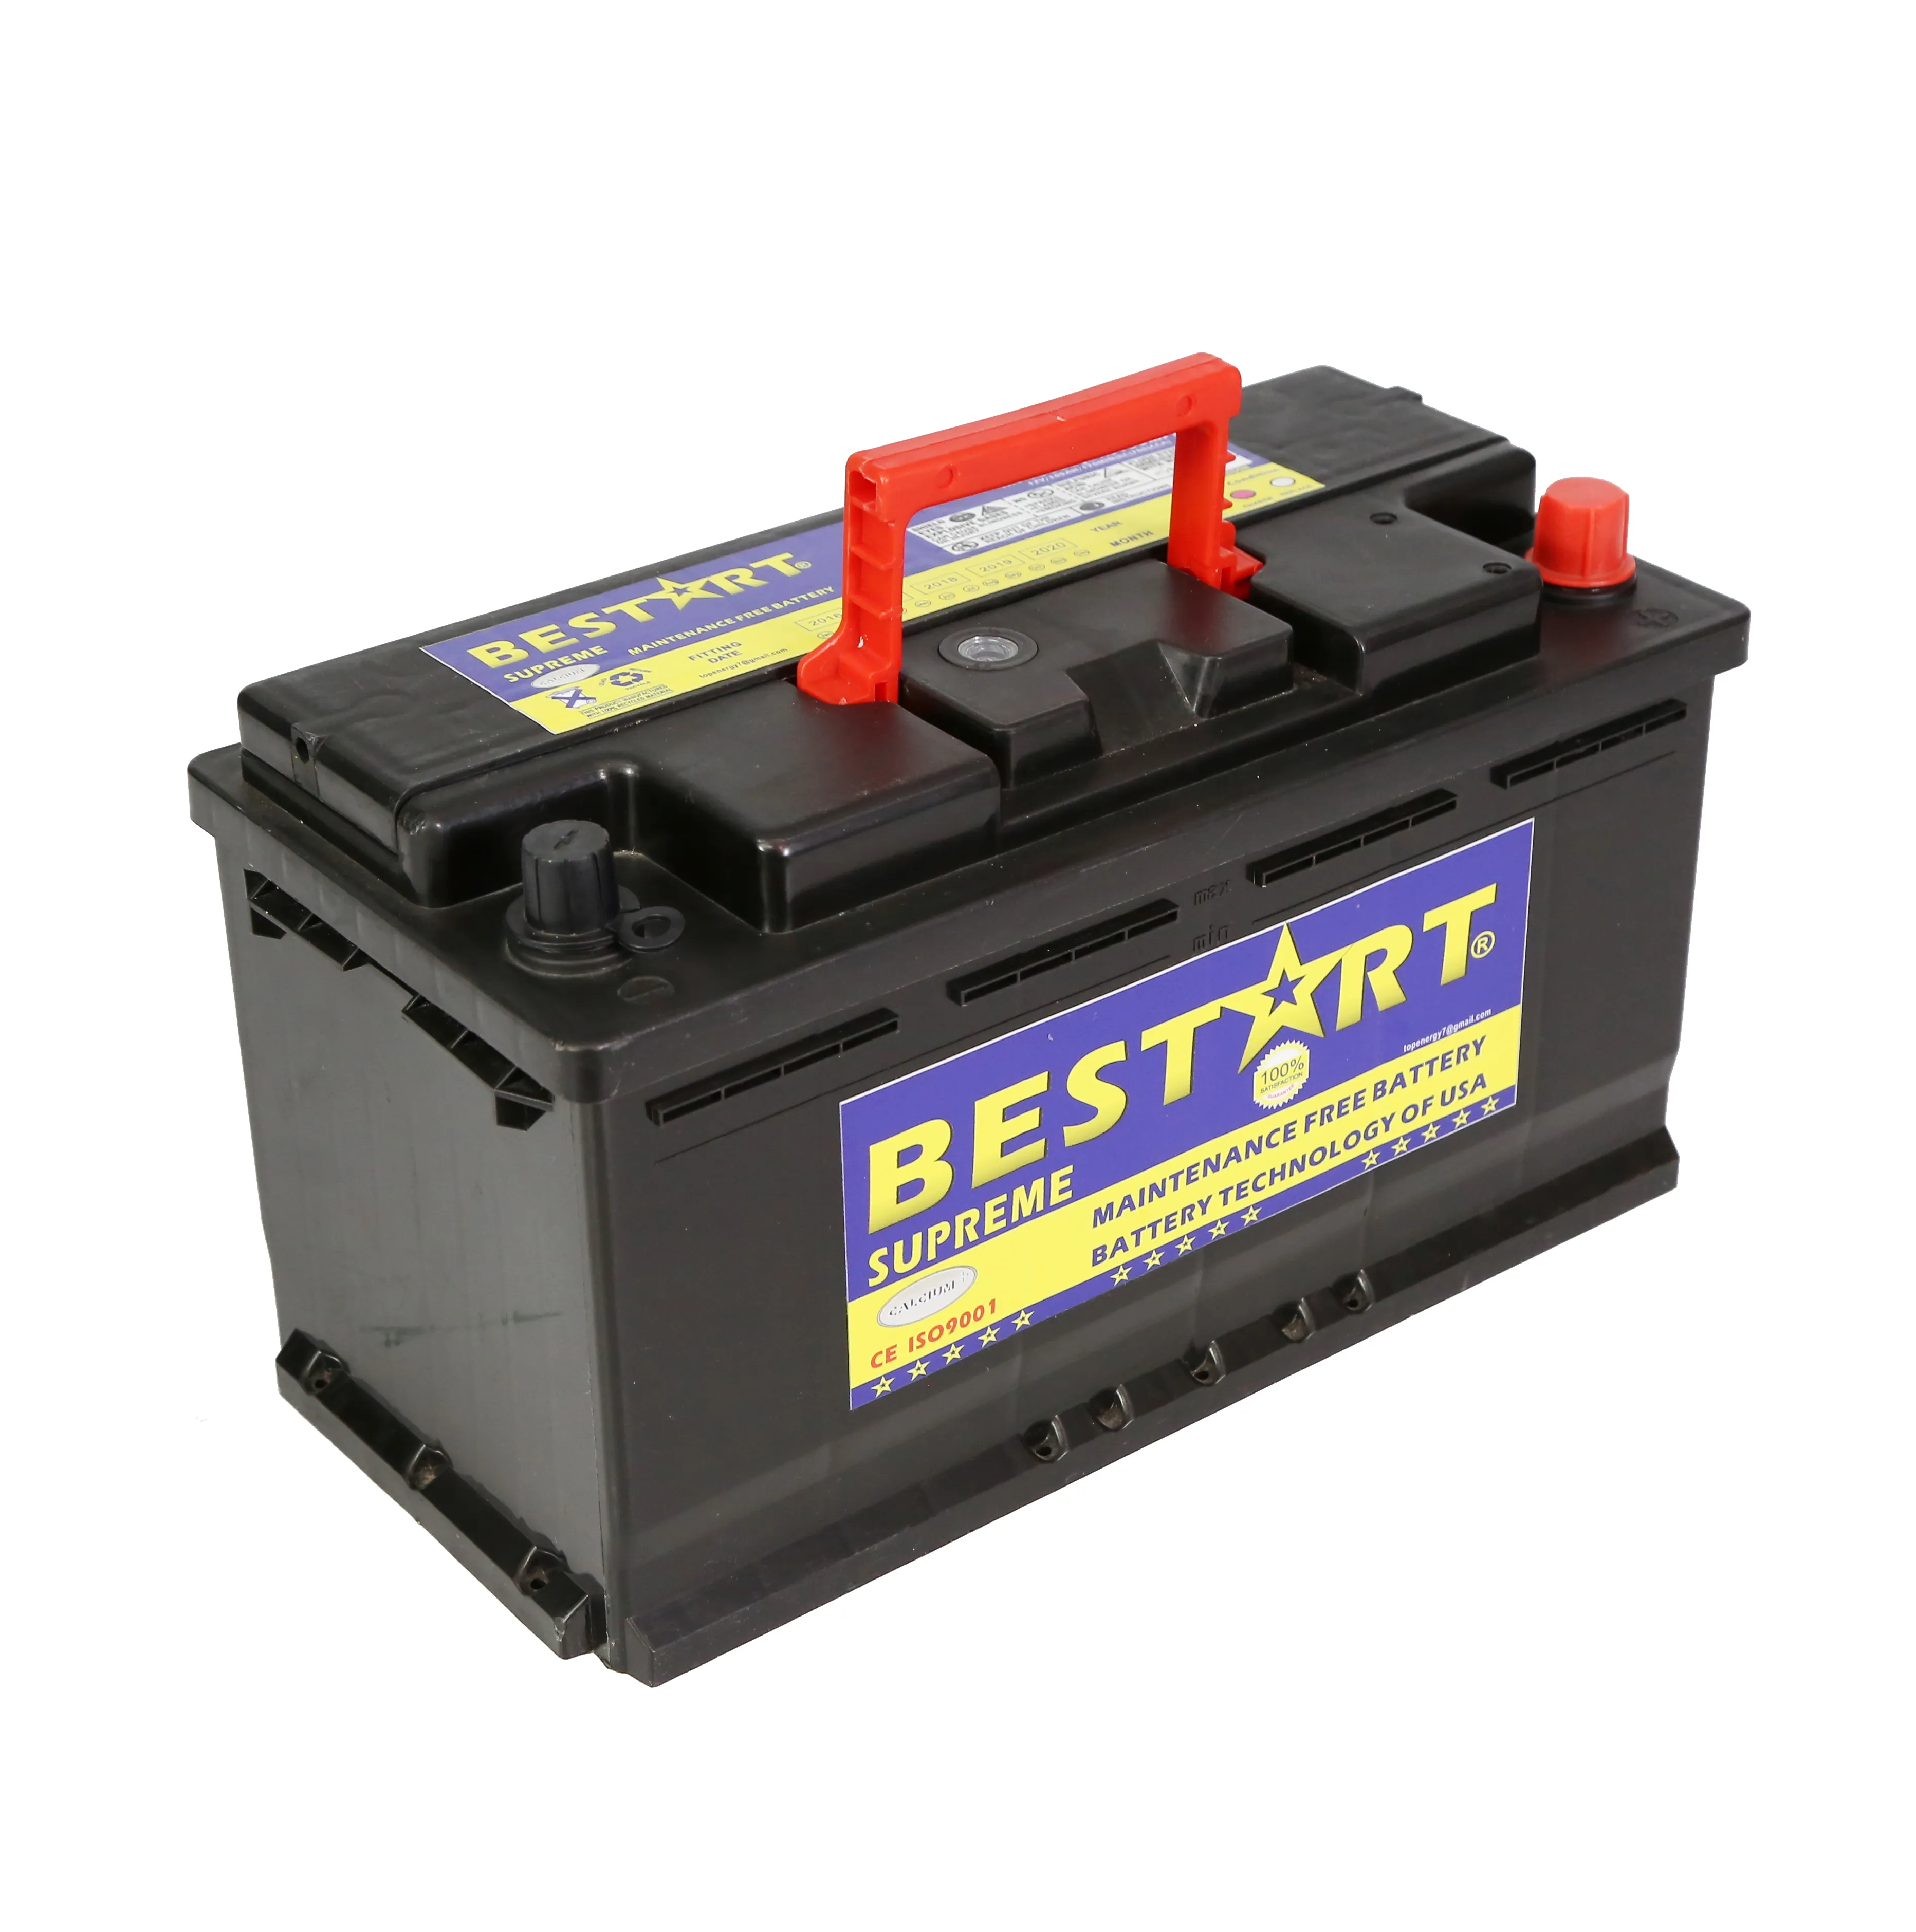 Battool — batterie de voiture 12V, 100ah, cellule sèche, pour mini bus et bus, batterie scellée, MF